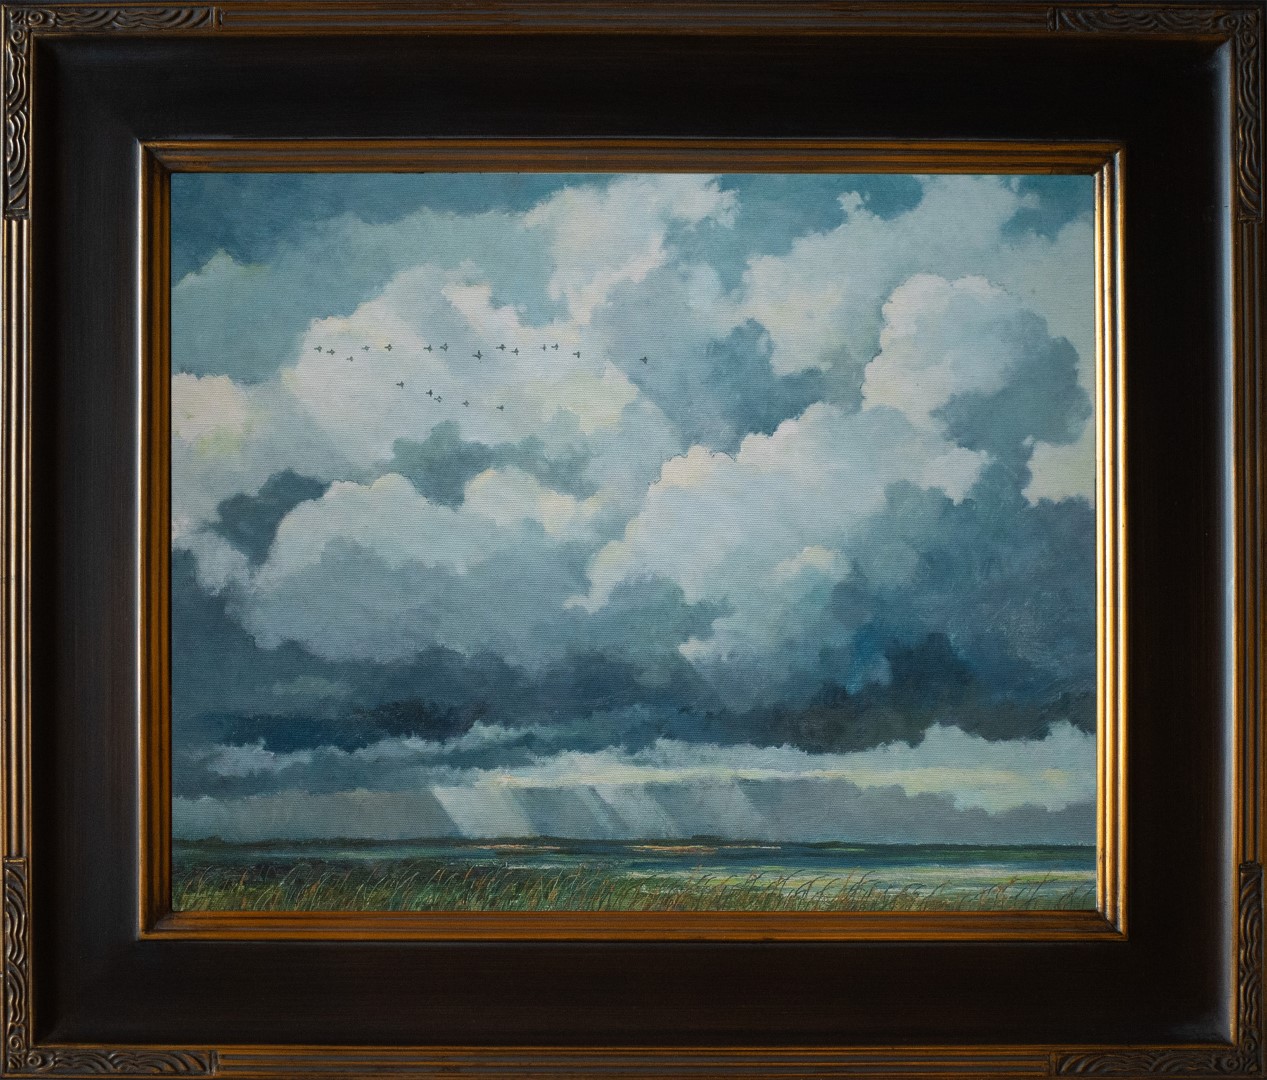 Eric Sloane Painting Title: Marshland Scene